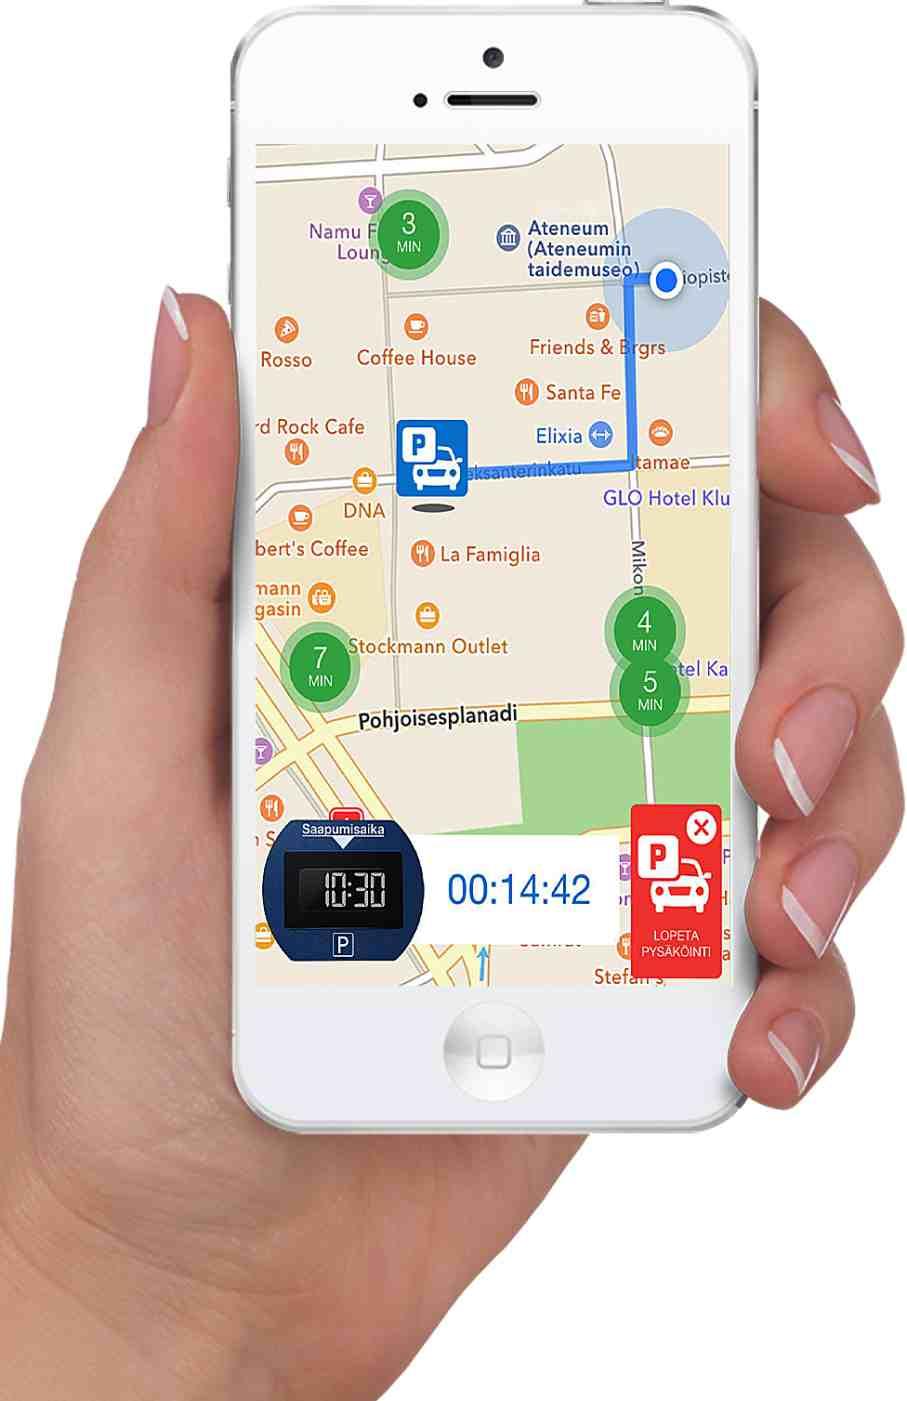 NEEDIT pysäköintikiekon ostaja saa mukana veloituksetta ainutlaatuisen Mobile App sovelluksen, jota muilla valmistajilla ei